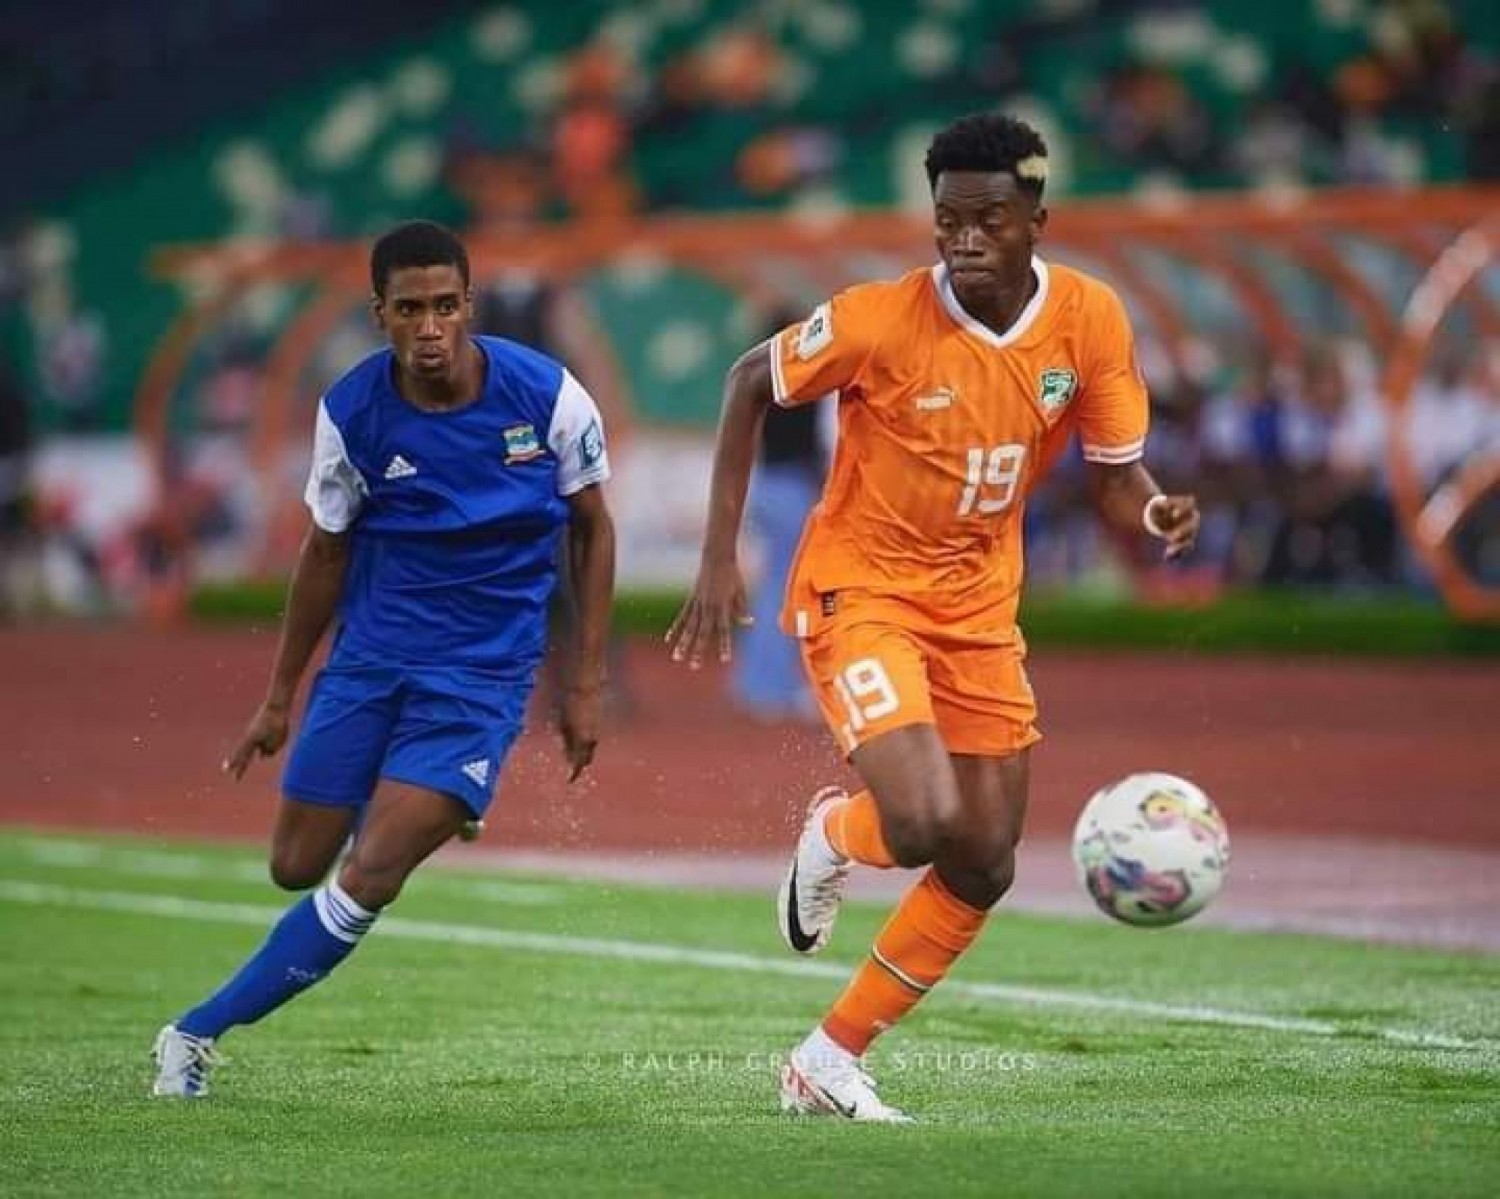 Côte d'Ivoire : Eliminatoires mondial 2026, hécatombe au stade Ebimpé pour les Seychelles pulvérisés 9 – 0 par les Ivoiriens